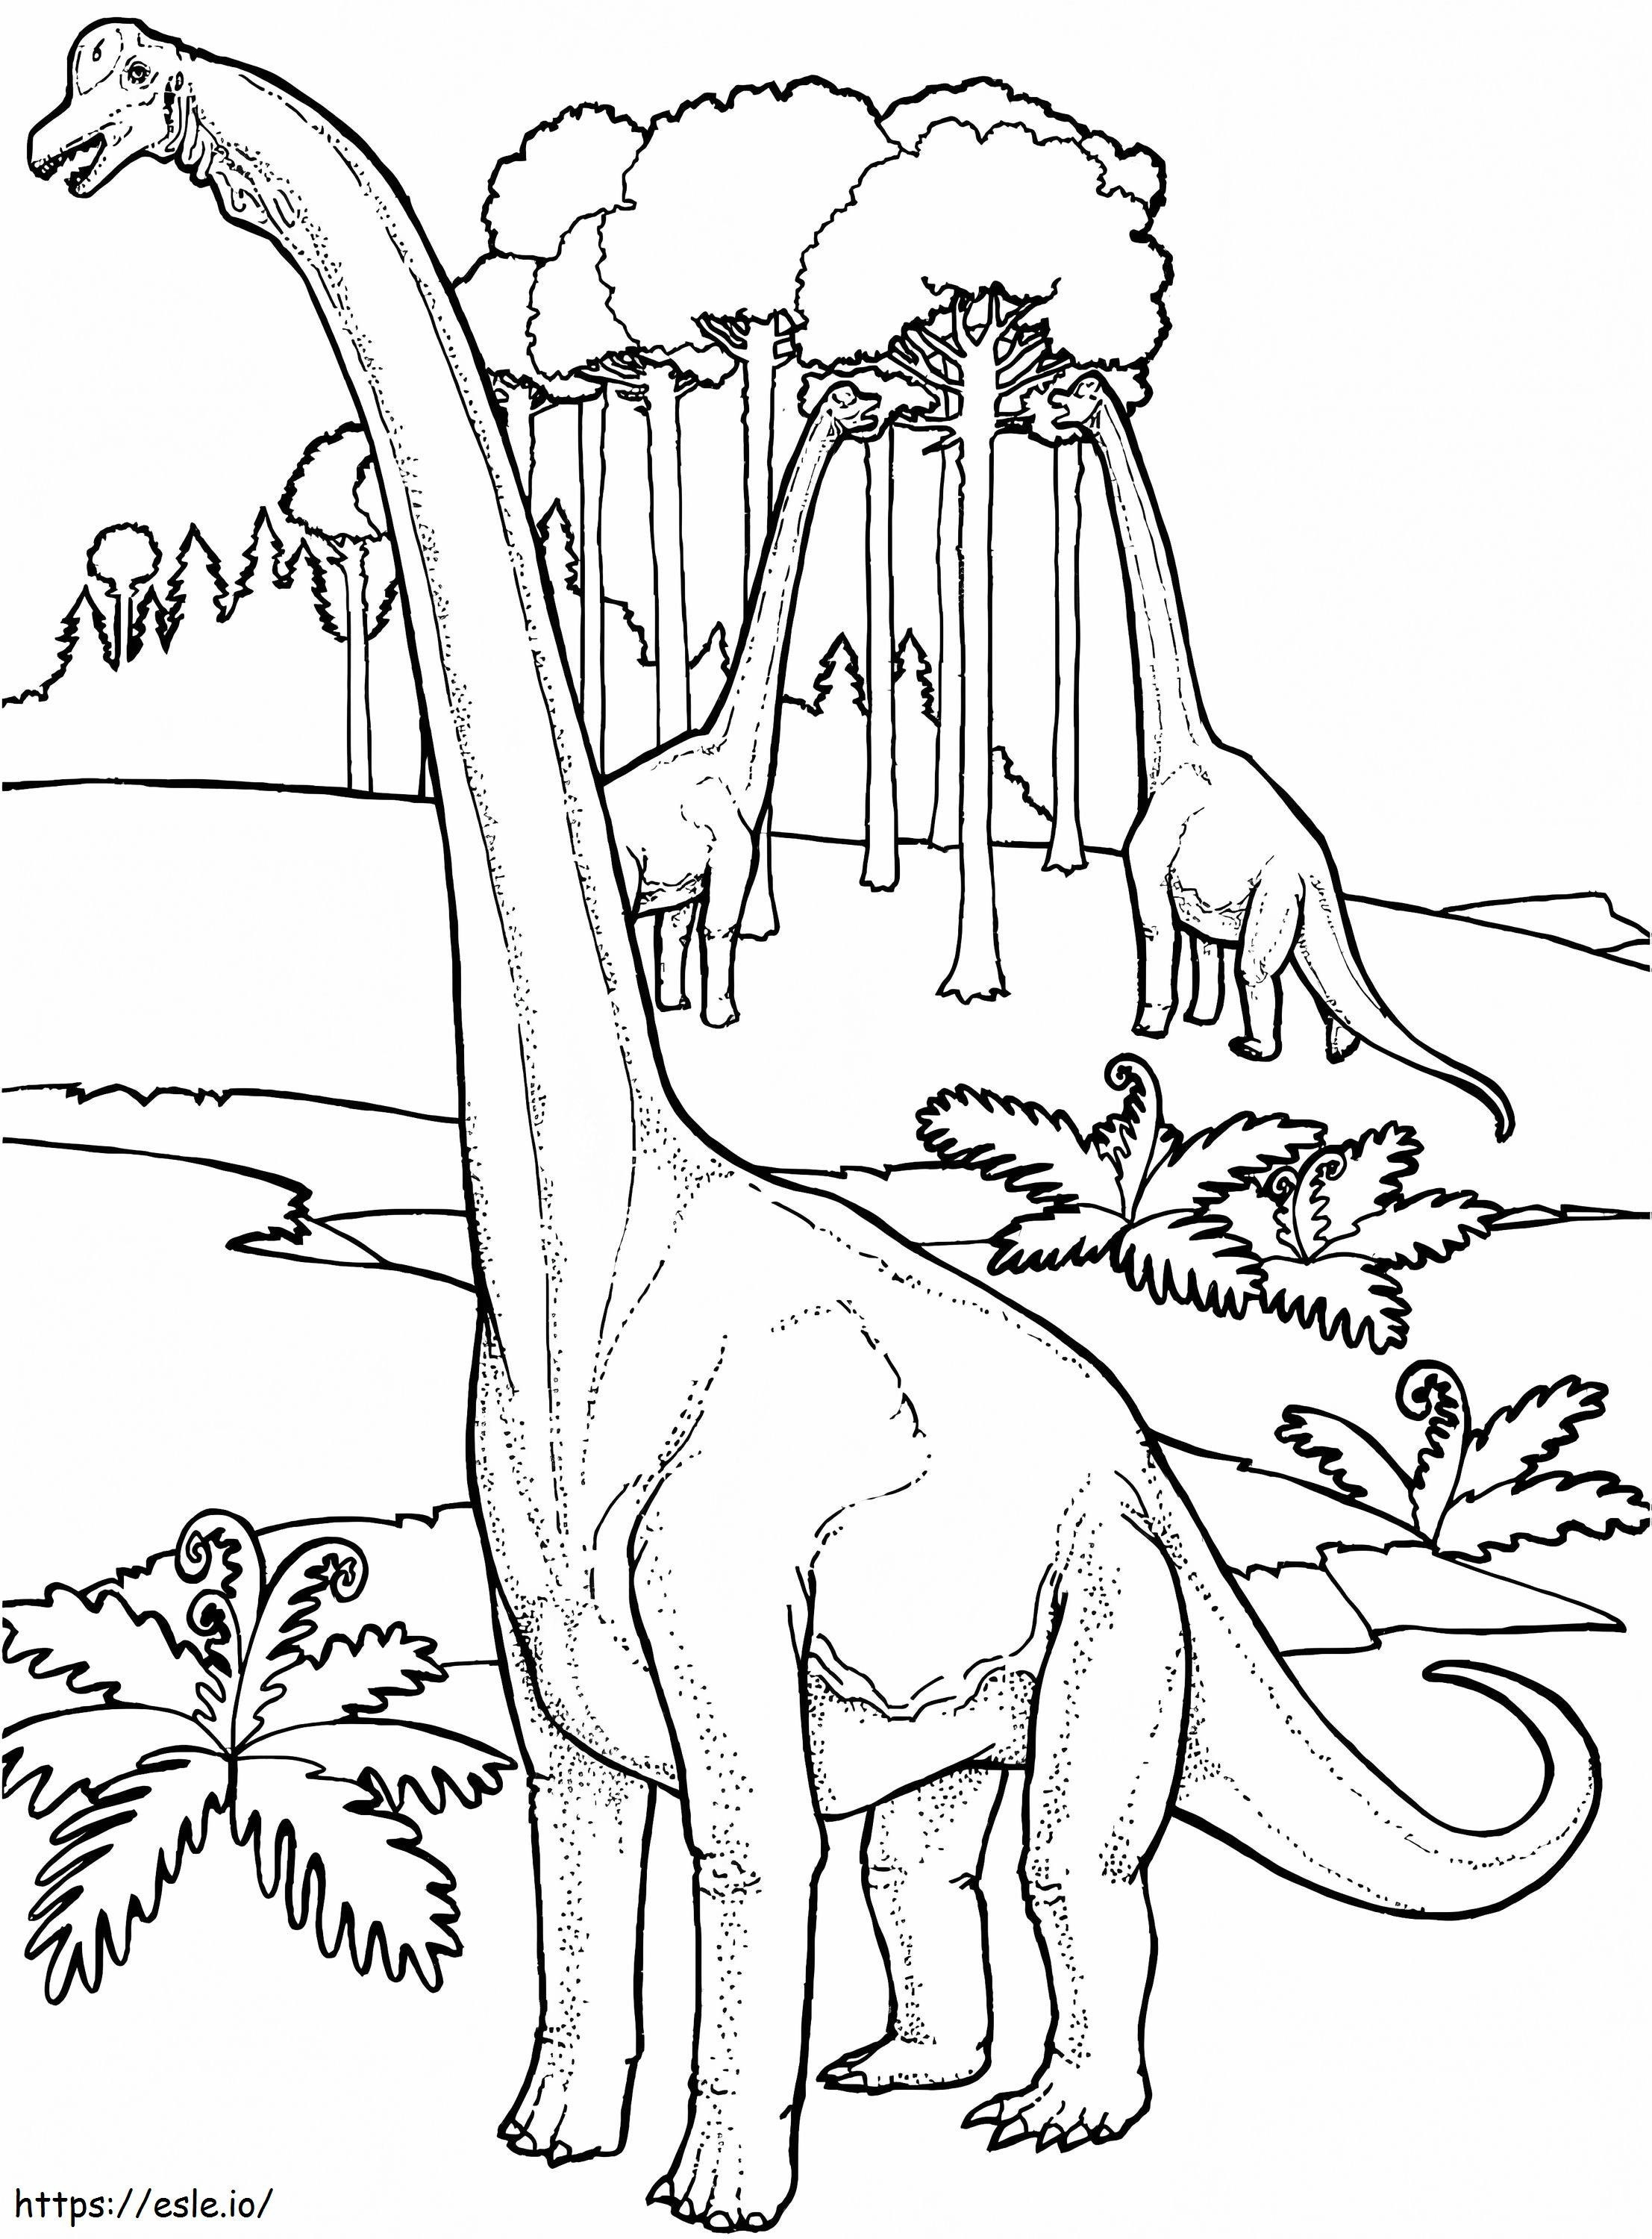 Dinosauro Brachiosauro da colorare